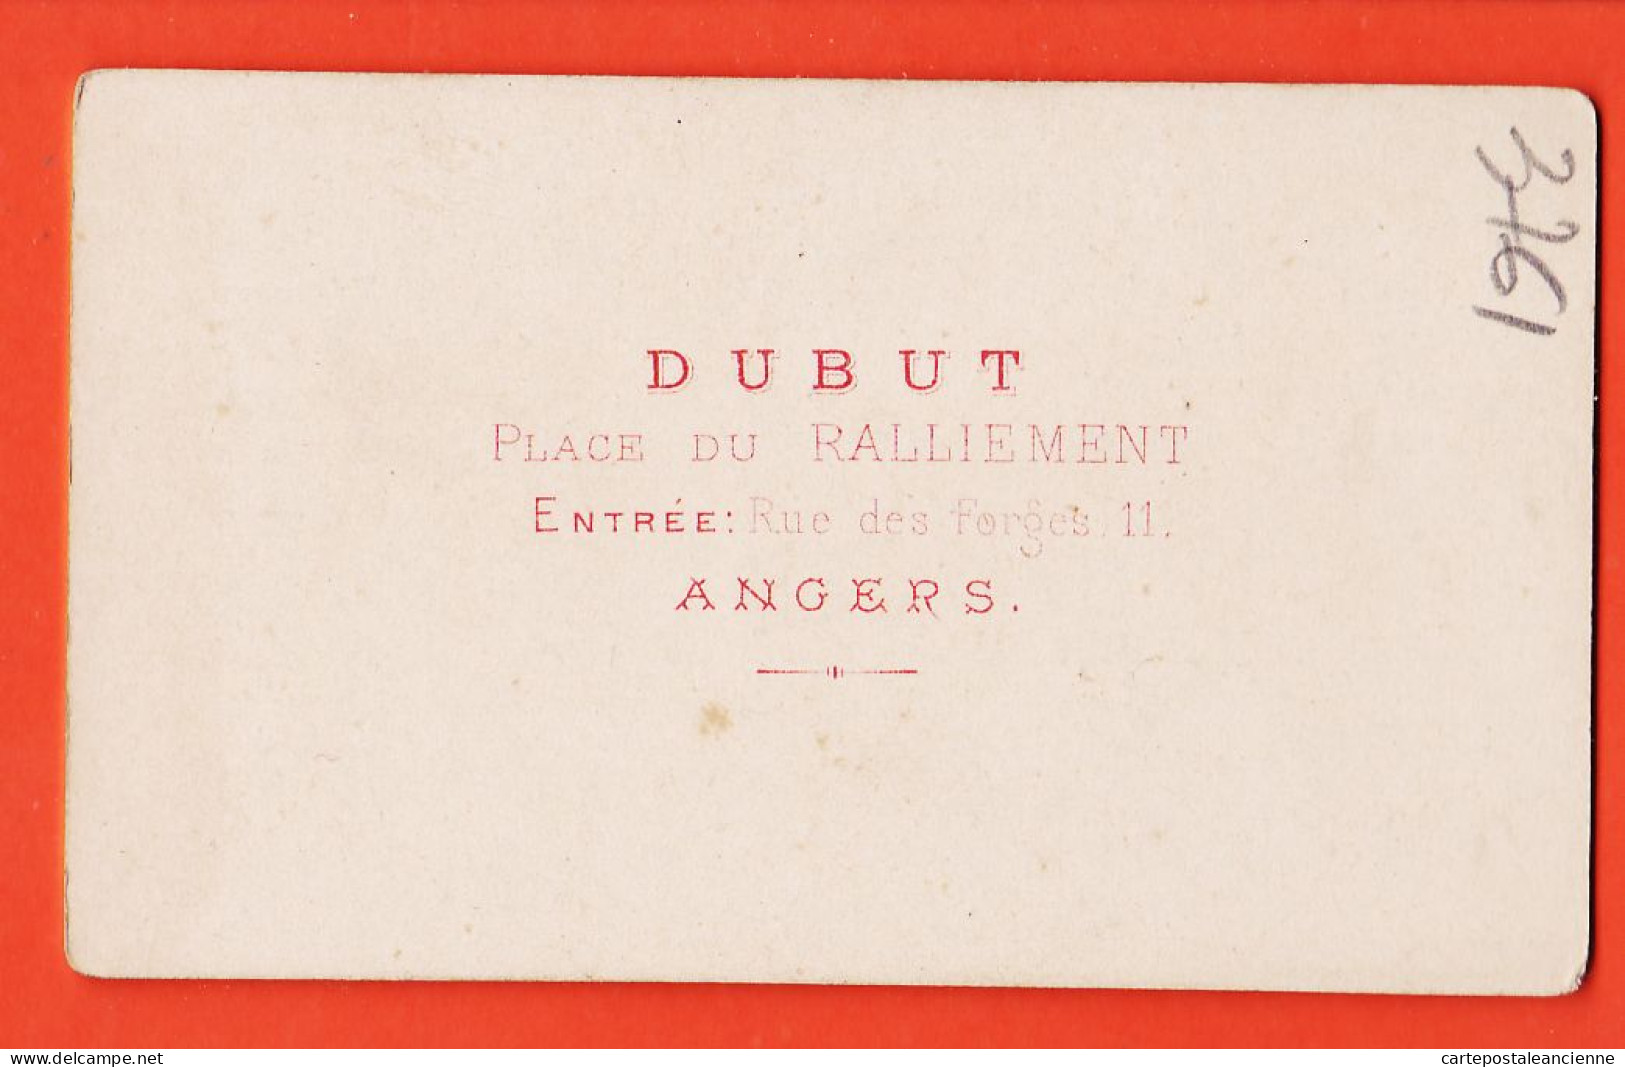 09824 / ⭐ Photo CDV 49-ANGERS 1890s ◉ Bébé Assis Fauteuil Prie-Dieu ◉ Photographie DUBUT Place Ralliement 11 Rue Forges - Anonieme Personen